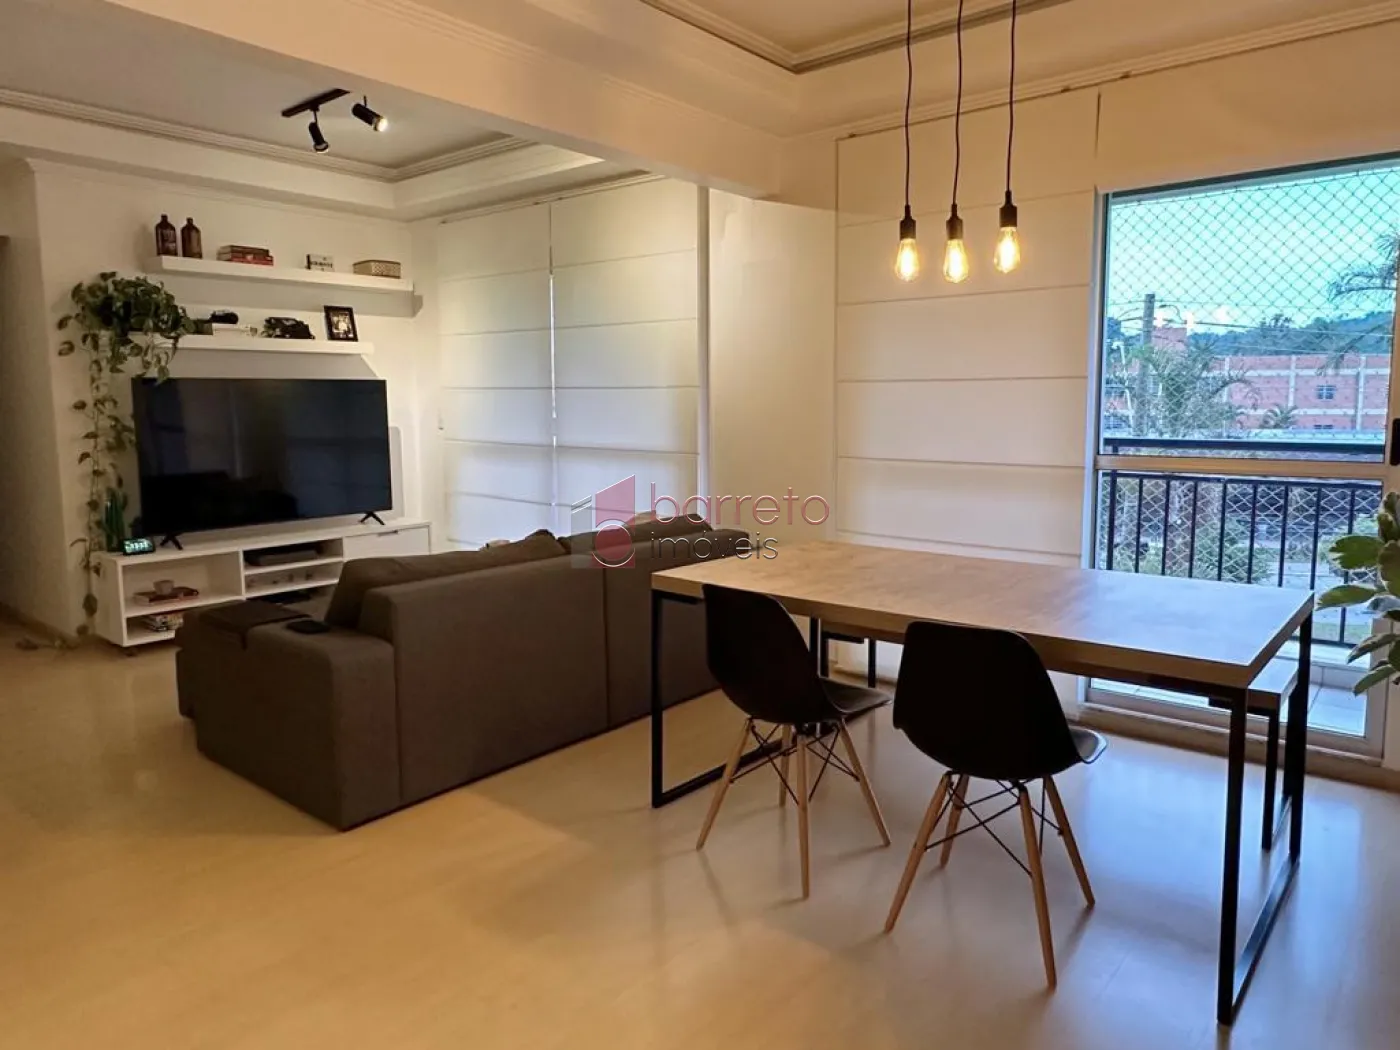 Comprar Apartamento / Padrão em Jundiaí R$ 980.000,00 - Foto 4